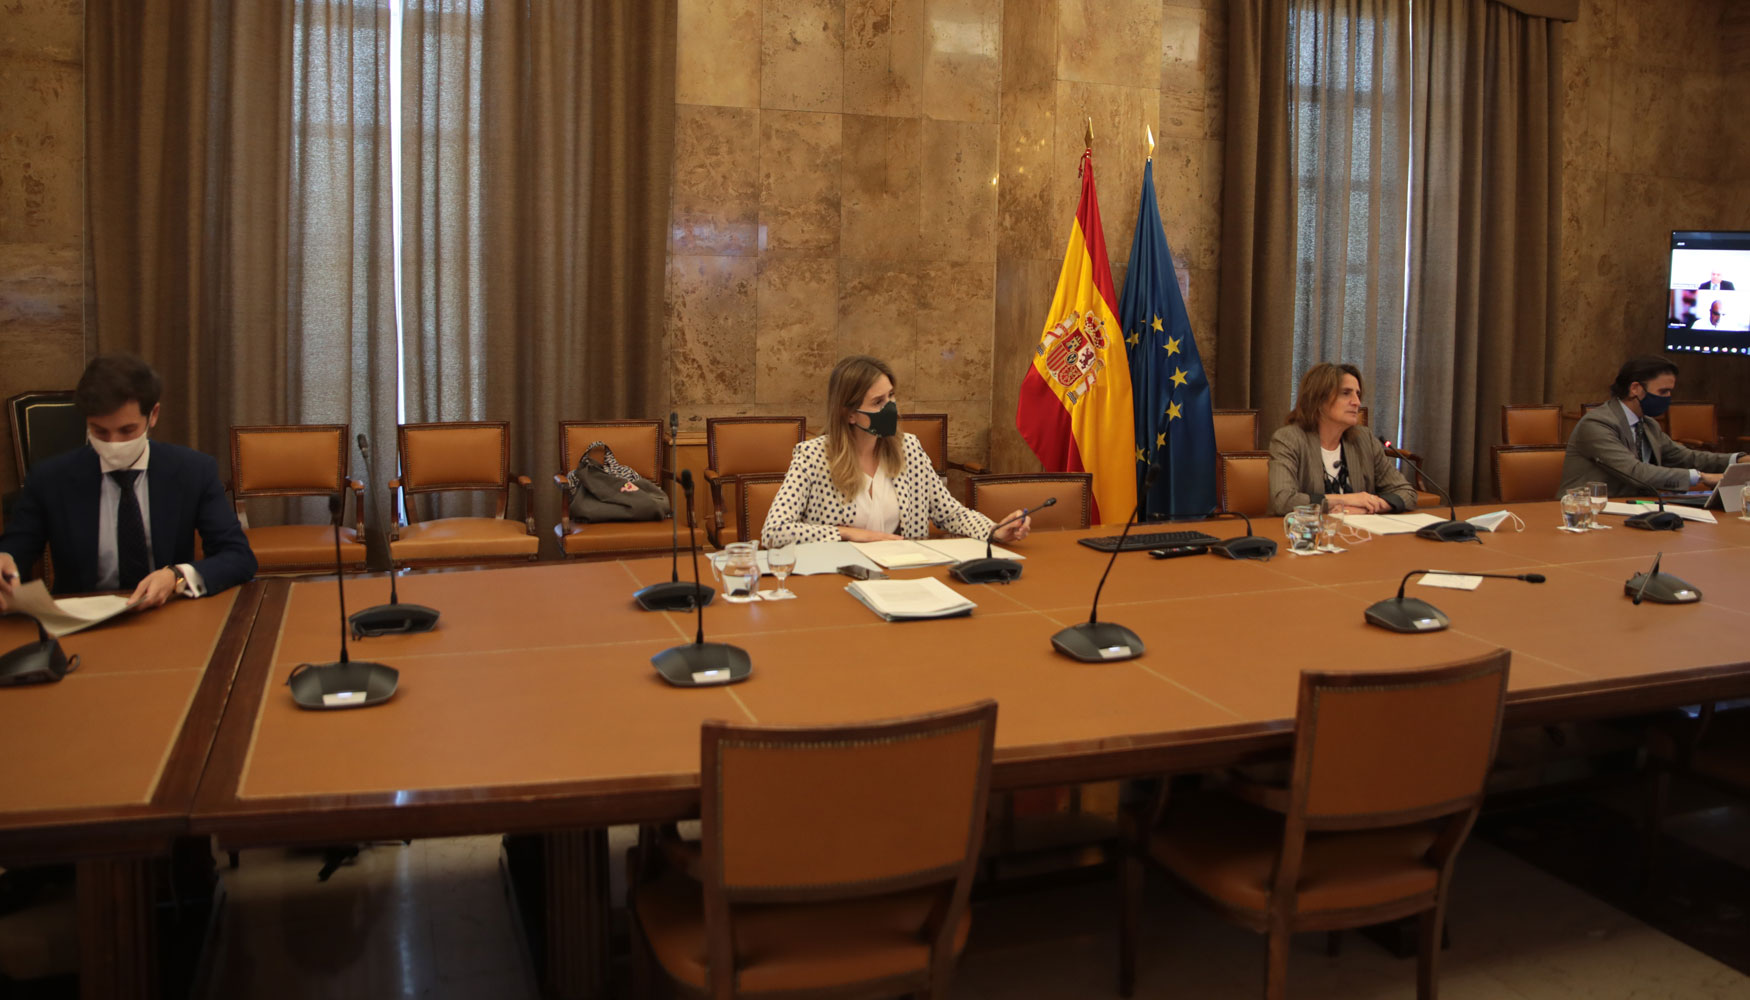 En la reunin participaron, como representantes institucionales, la ministra de Transicin Ecolgica y Reto Demogrfico...